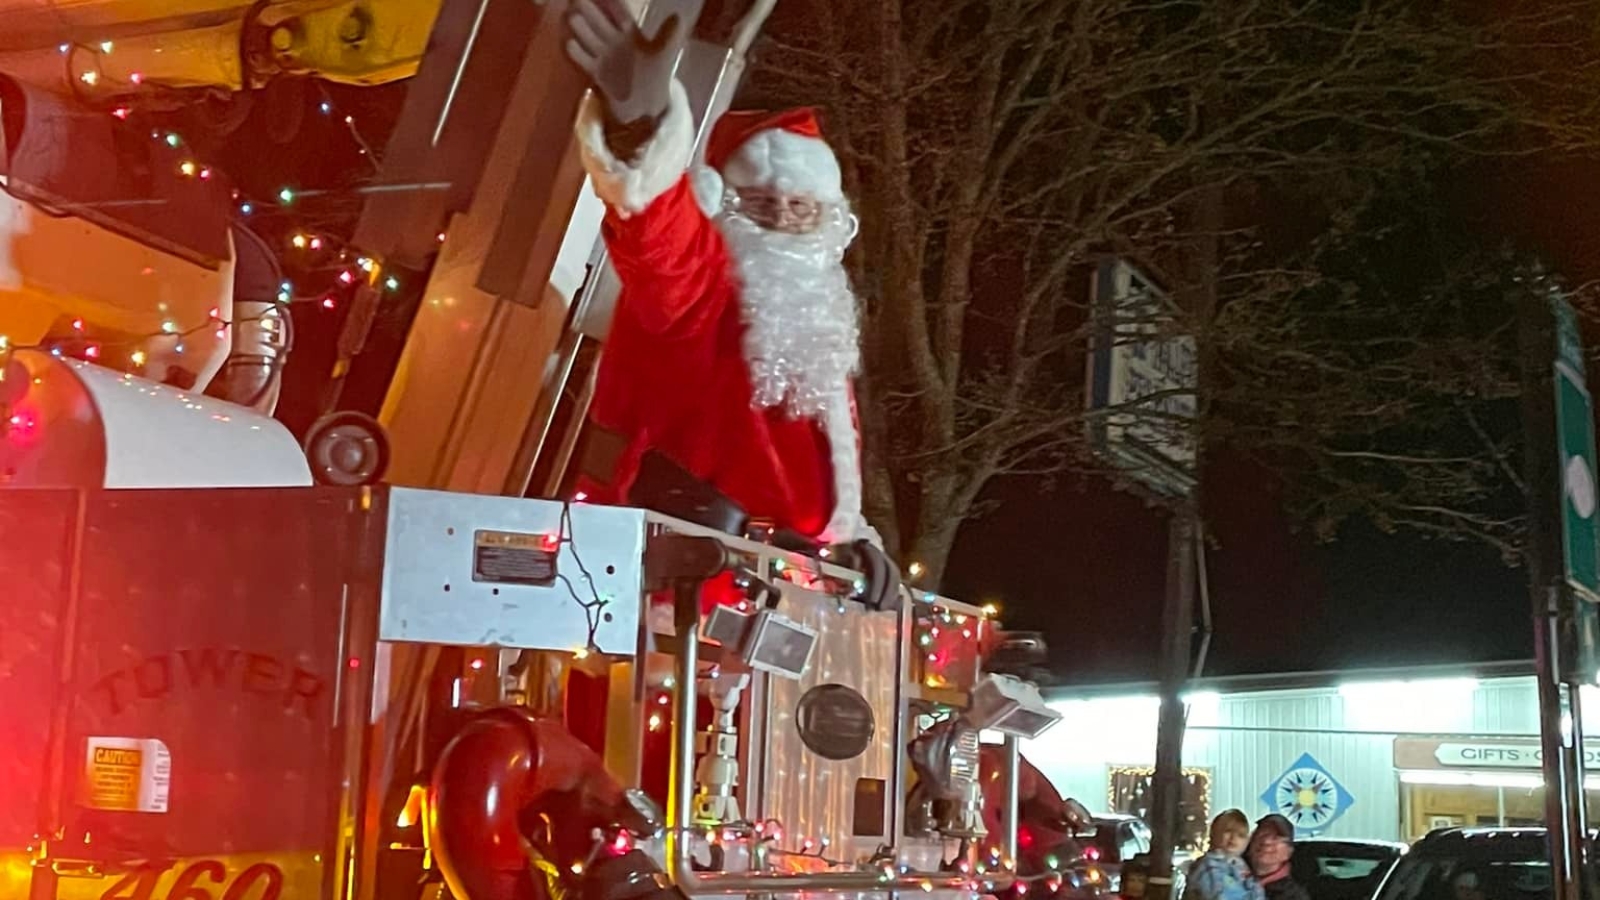 Santa waving during parade in Randolph